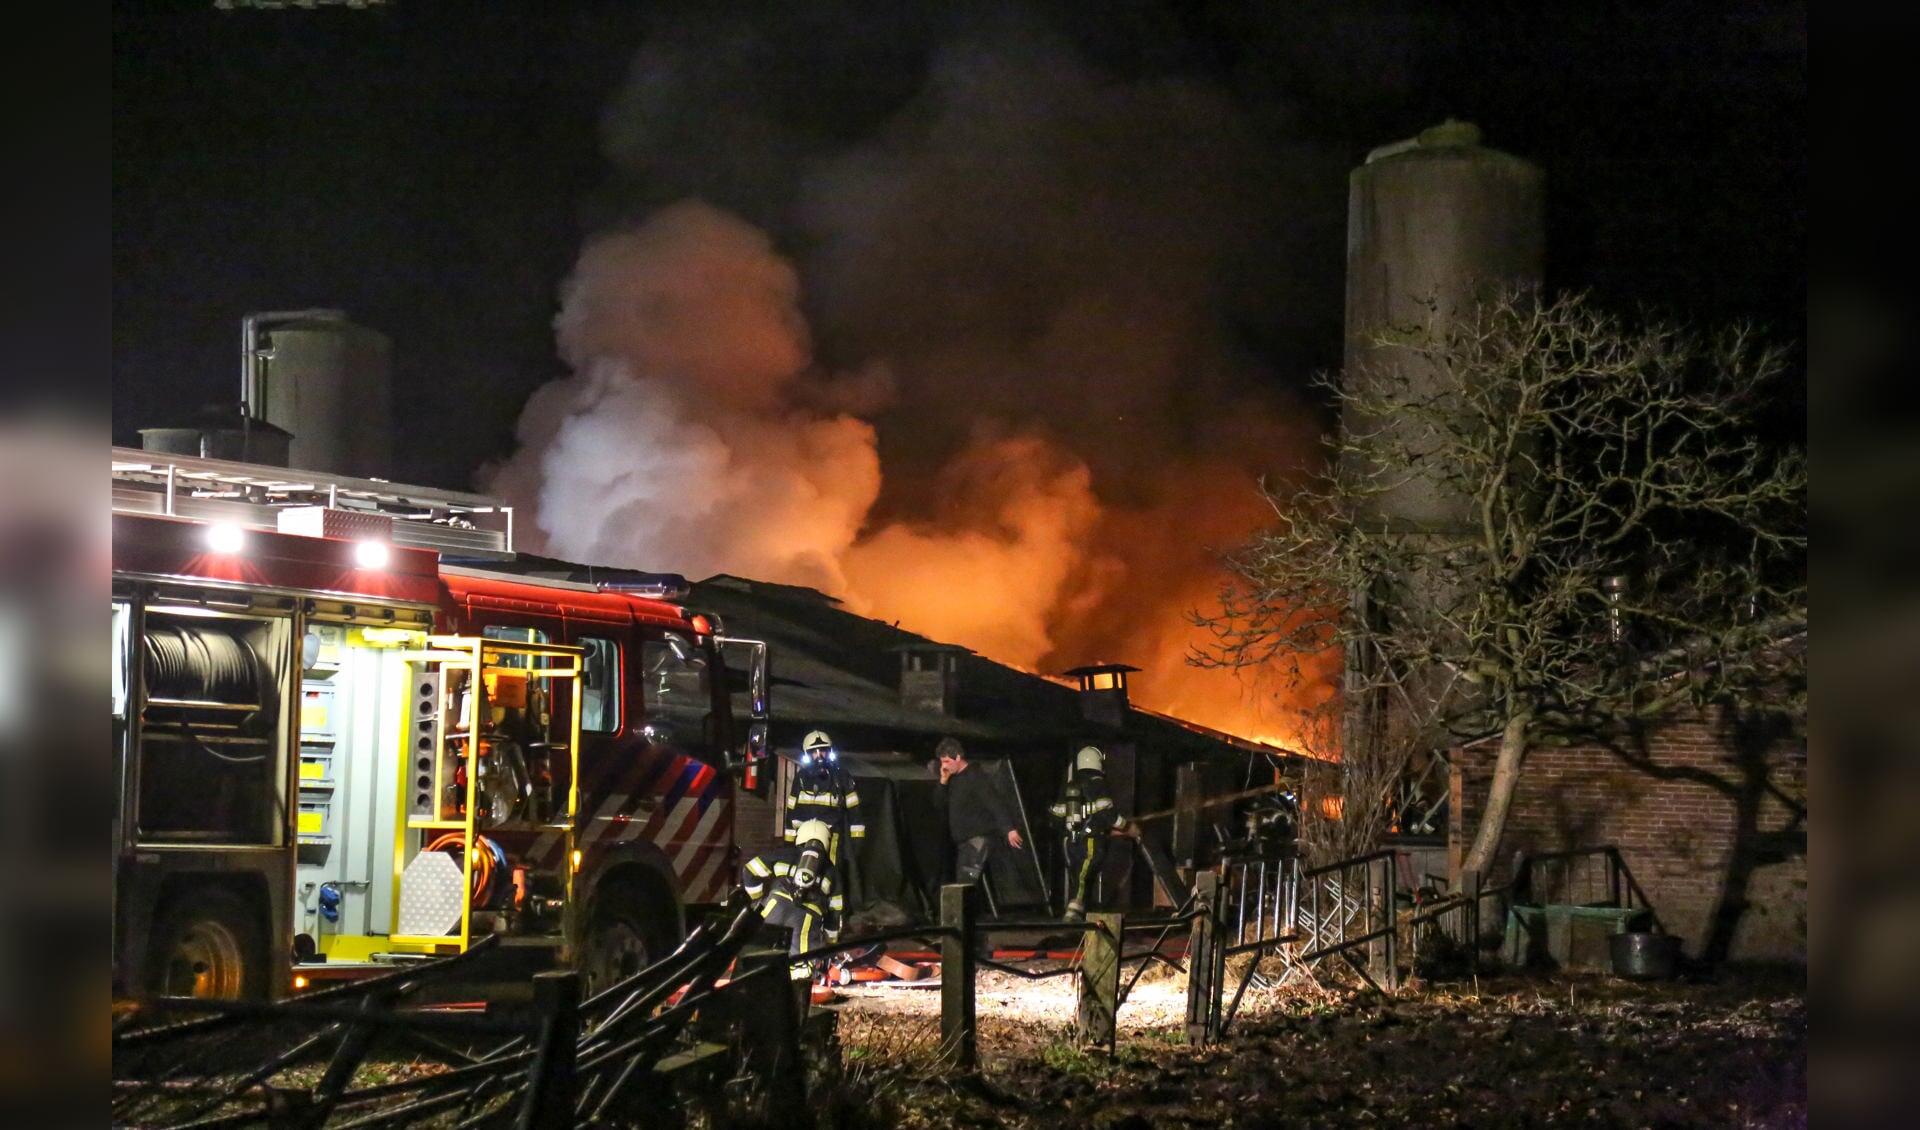 De brandweer blust de brand ( Foto's : Maickel Keijzers / Hendriks Multimedia )